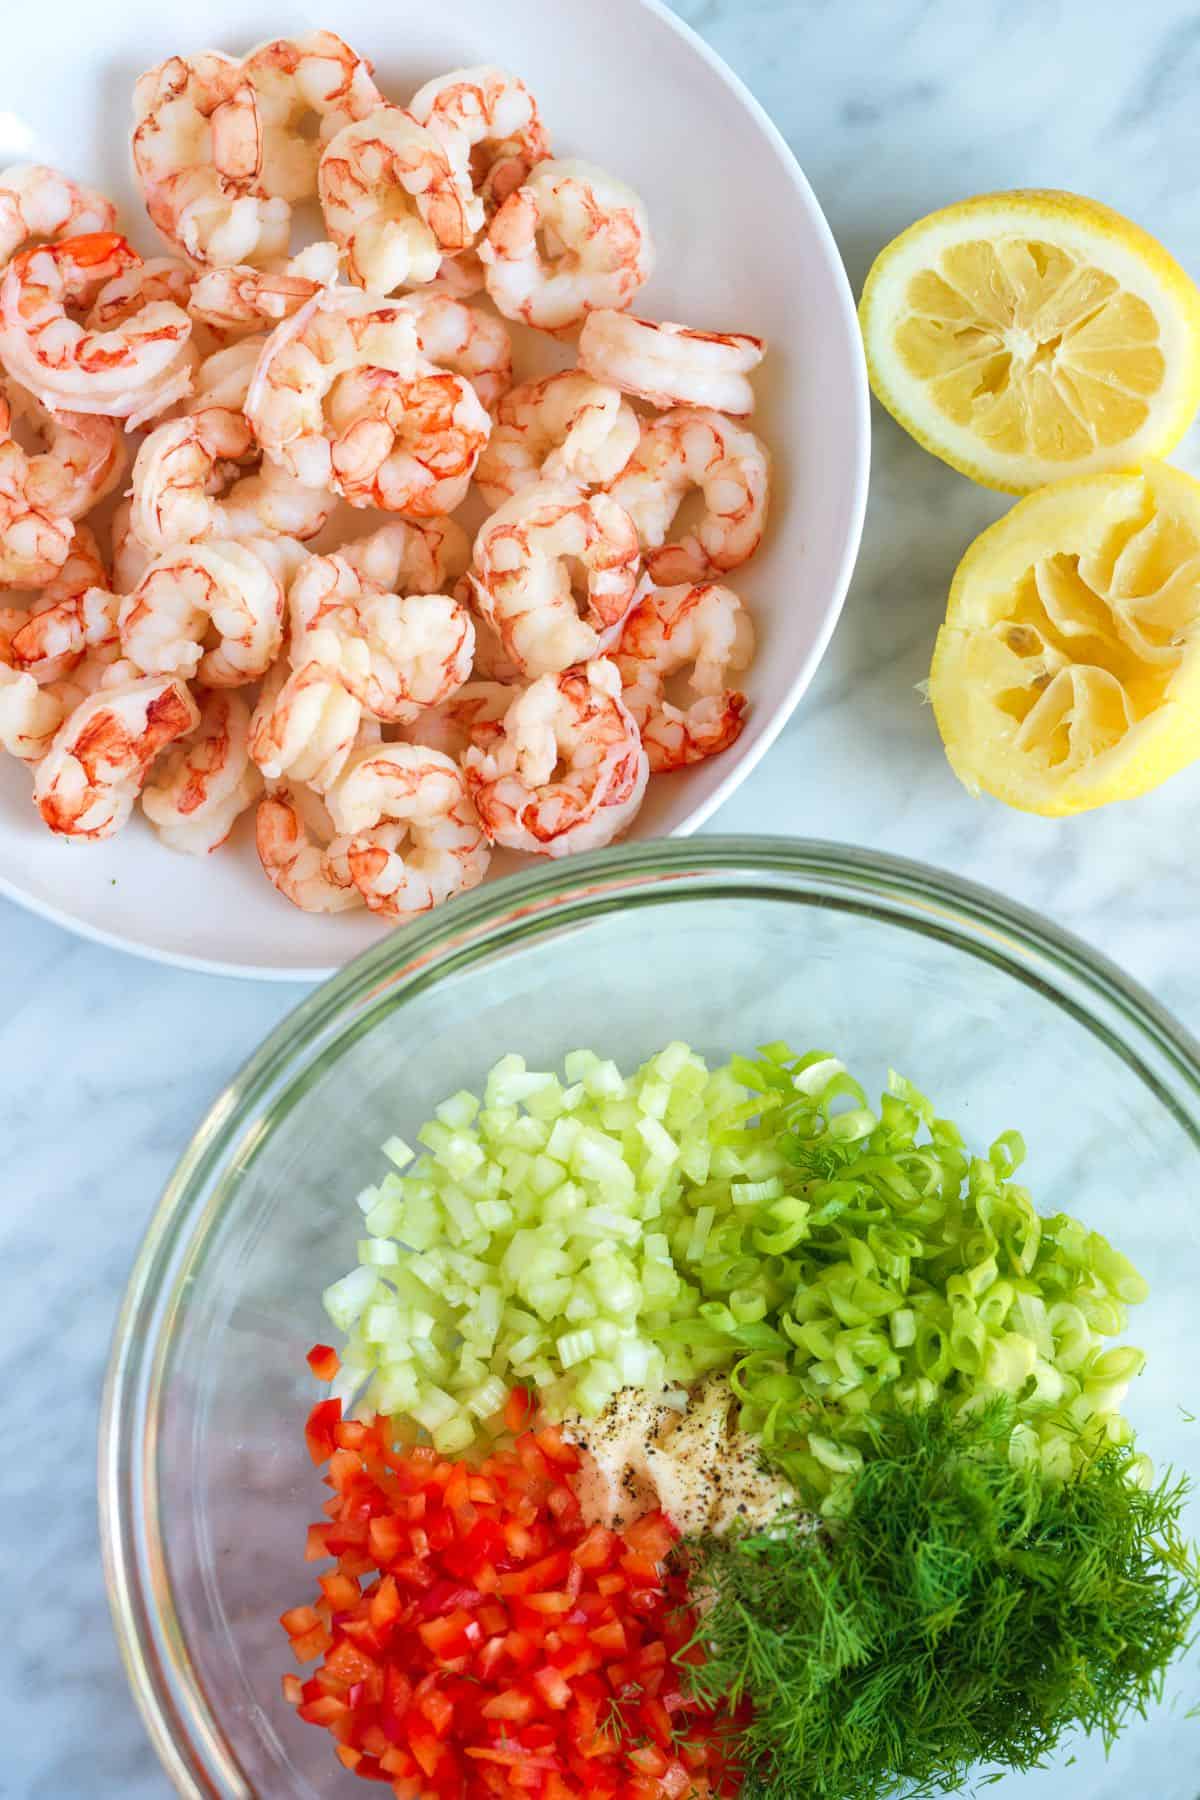 Shrimp salad ingredients